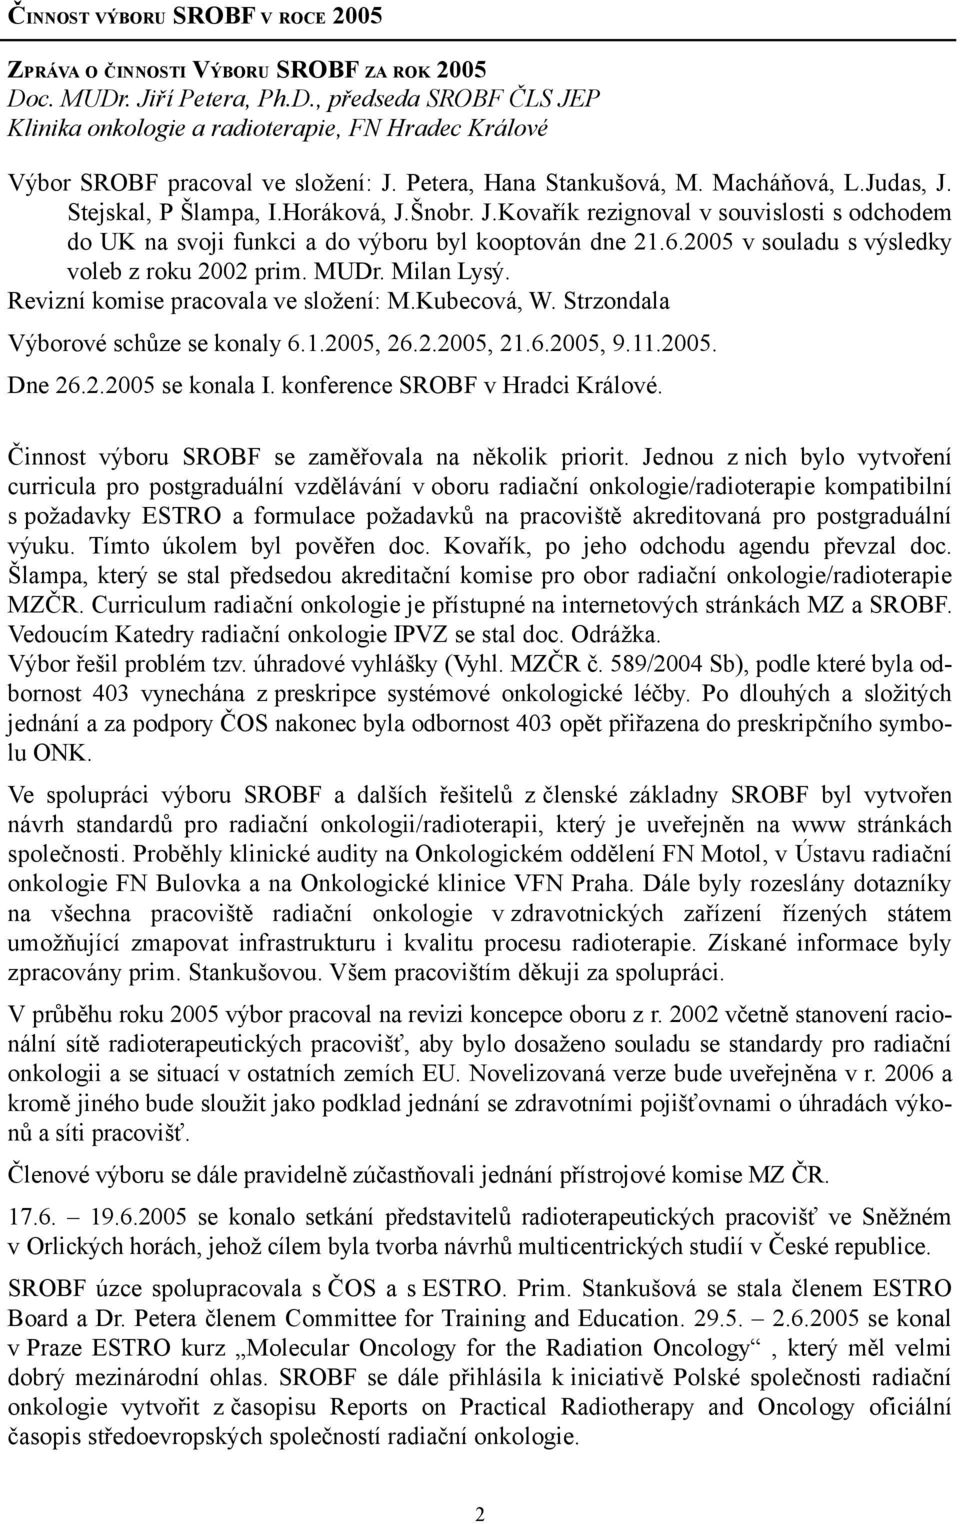 2005 v souladu s výsledky voleb z roku 2002 prim. MUDr. Milan Lysý. Revizní komise pracovala ve složení: M.Kubecová, W. Strzondala Výborové schůze se konaly 6.1.2005, 26.2.2005, 21.6.2005, 9.11.2005. Dne 26.